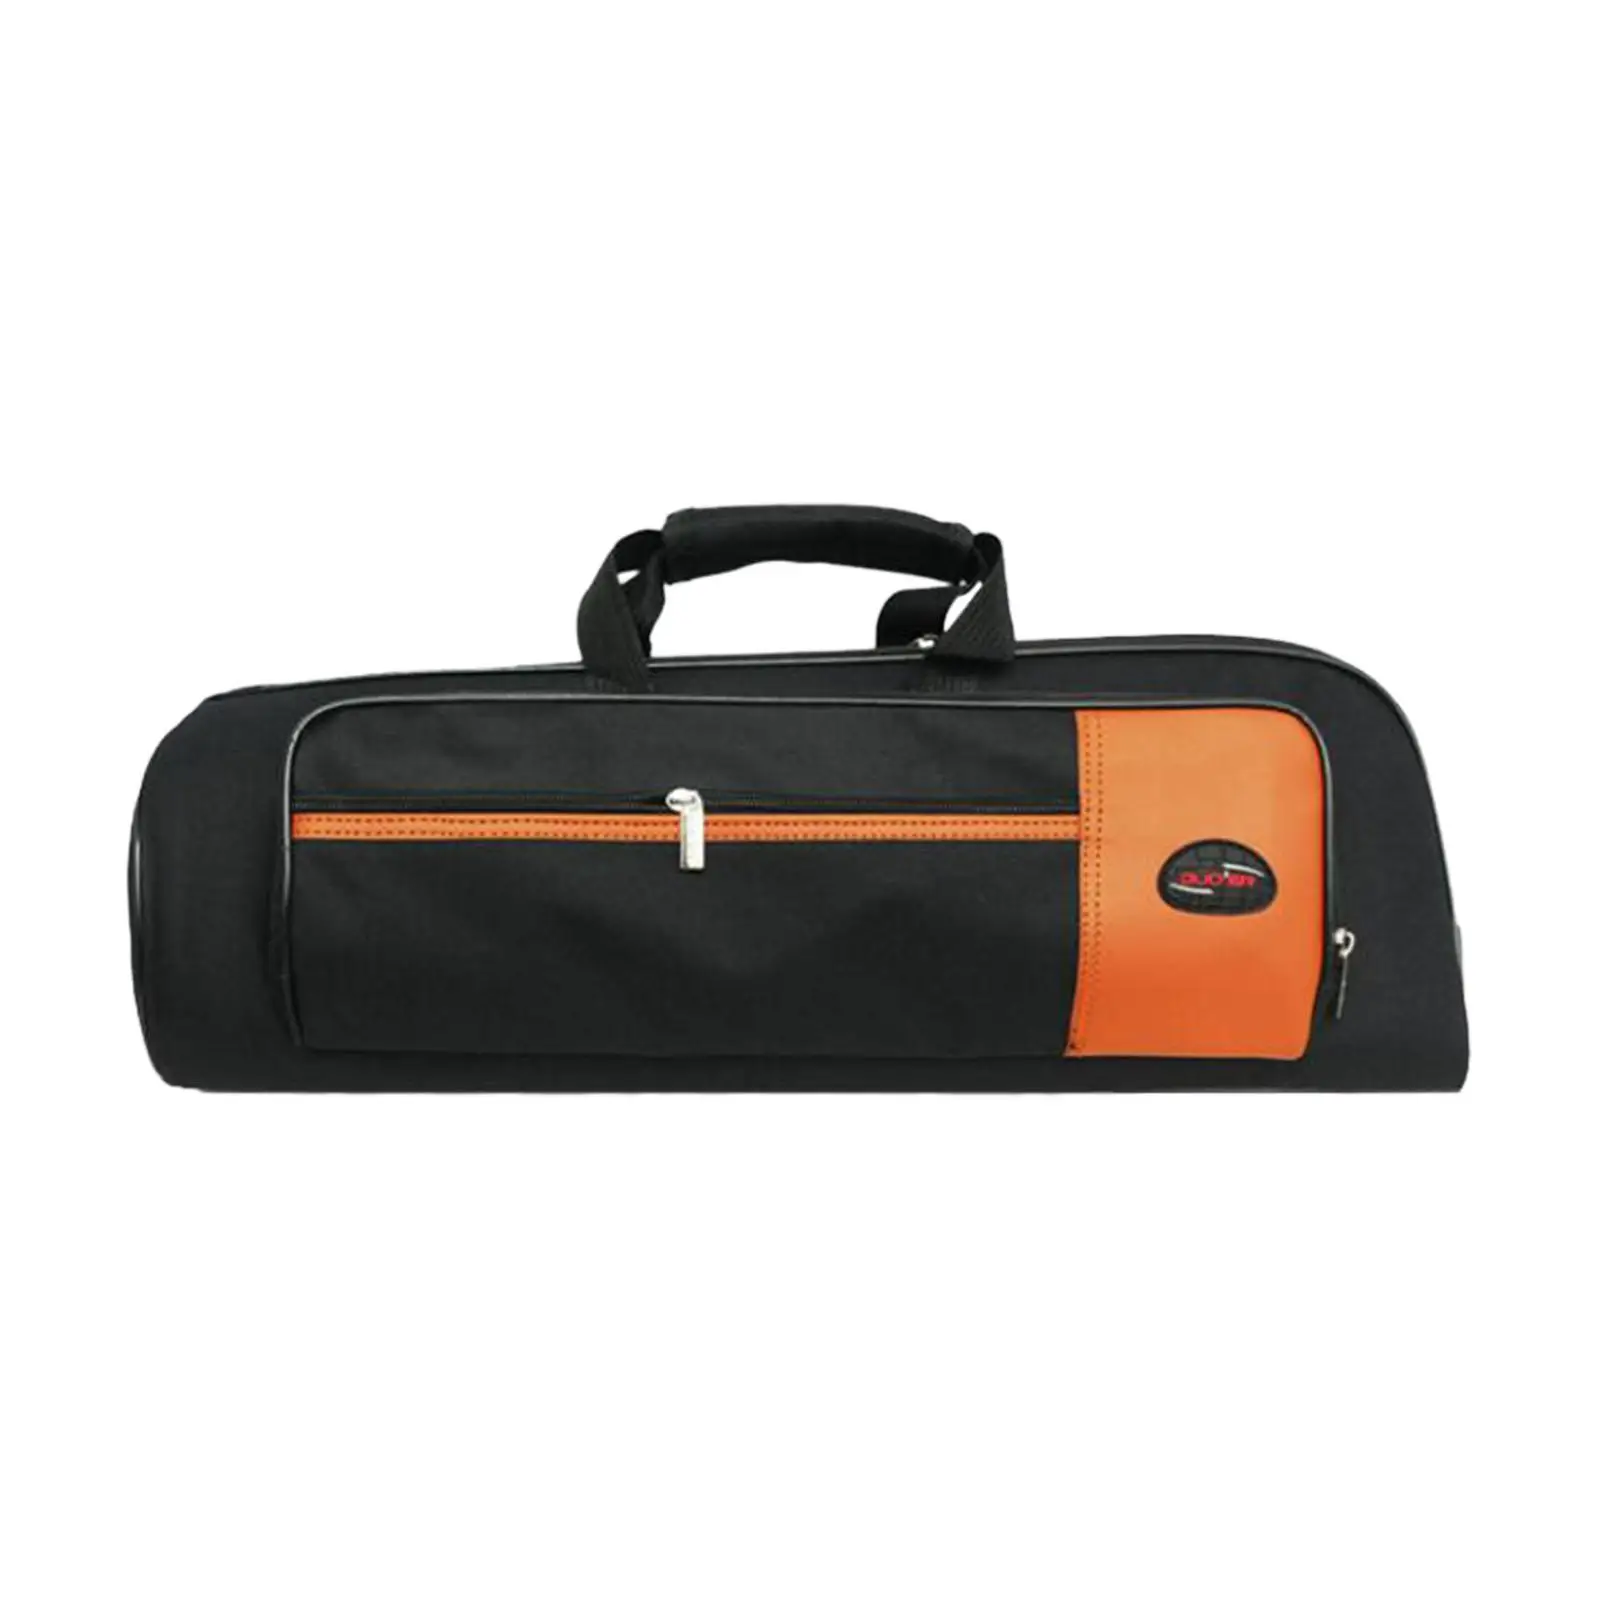 Trumpet Gig Bag Case Waterproof Adjustable Shoudler Strap Backpack Carrying Case for Stage Performance Concert Travel Outside